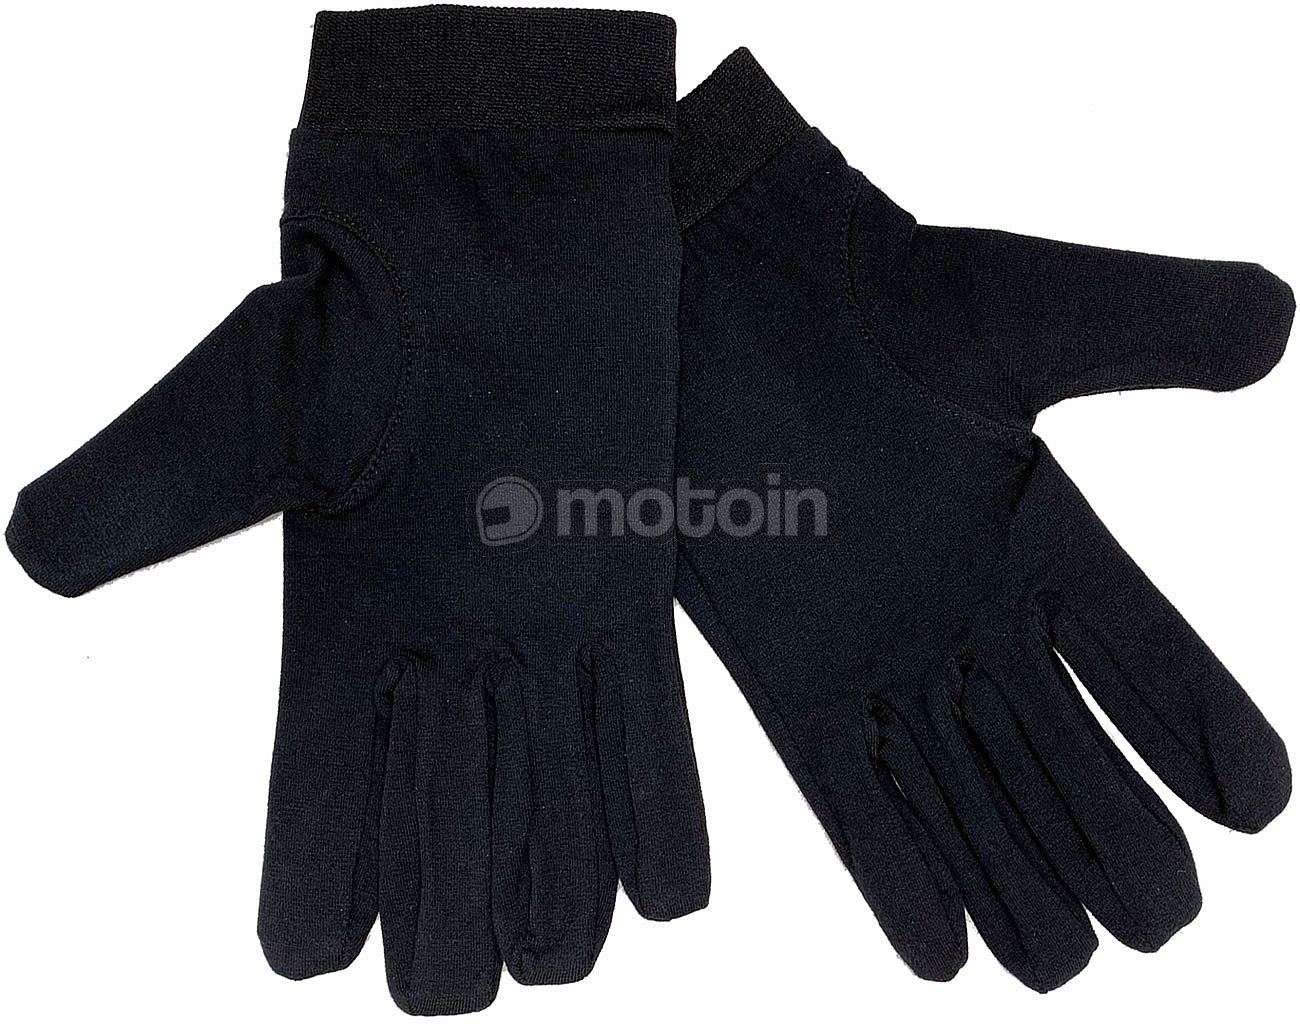 Germot Motorrad Unterzieh Handschuhe Lycra Winter Wärmeisolierend Hautfreundlich 